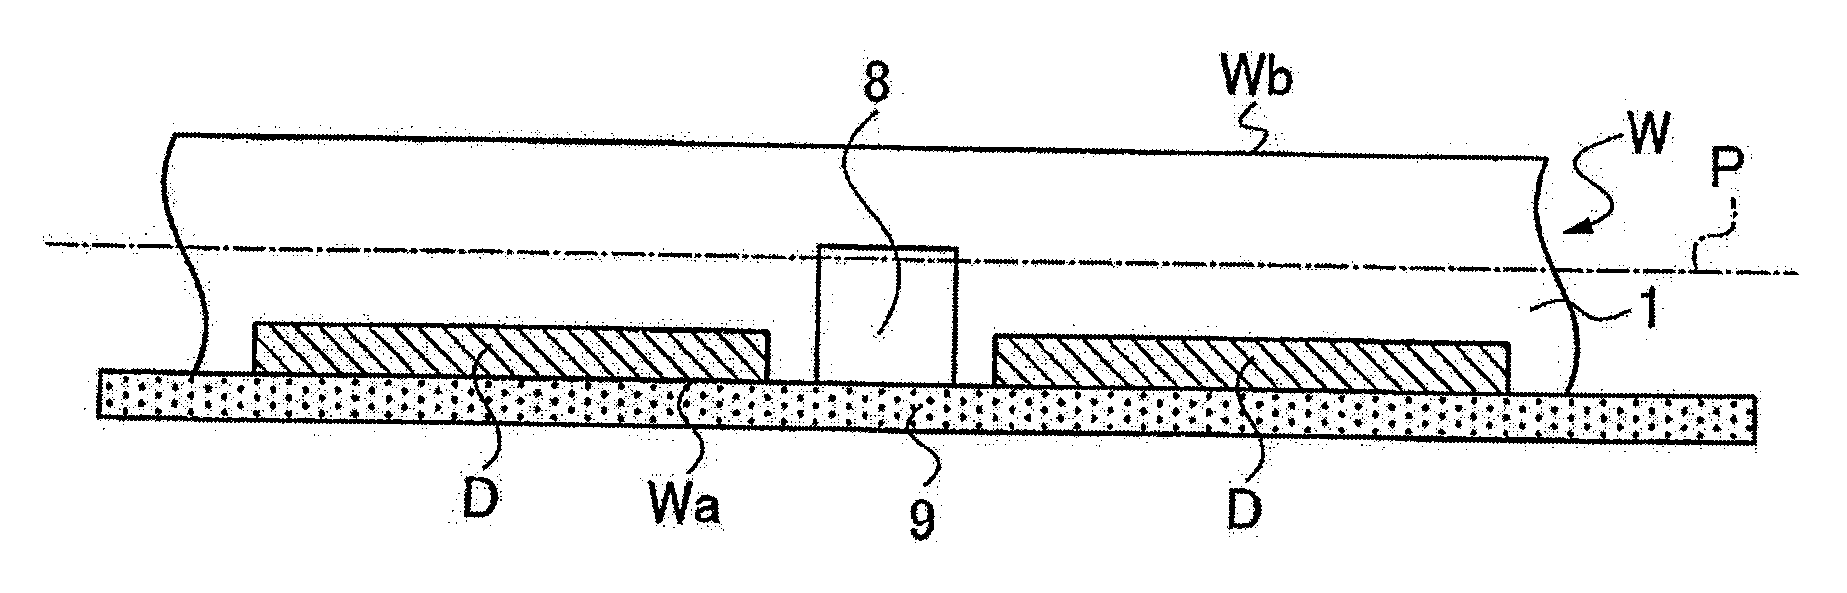 Method of dividing wafer